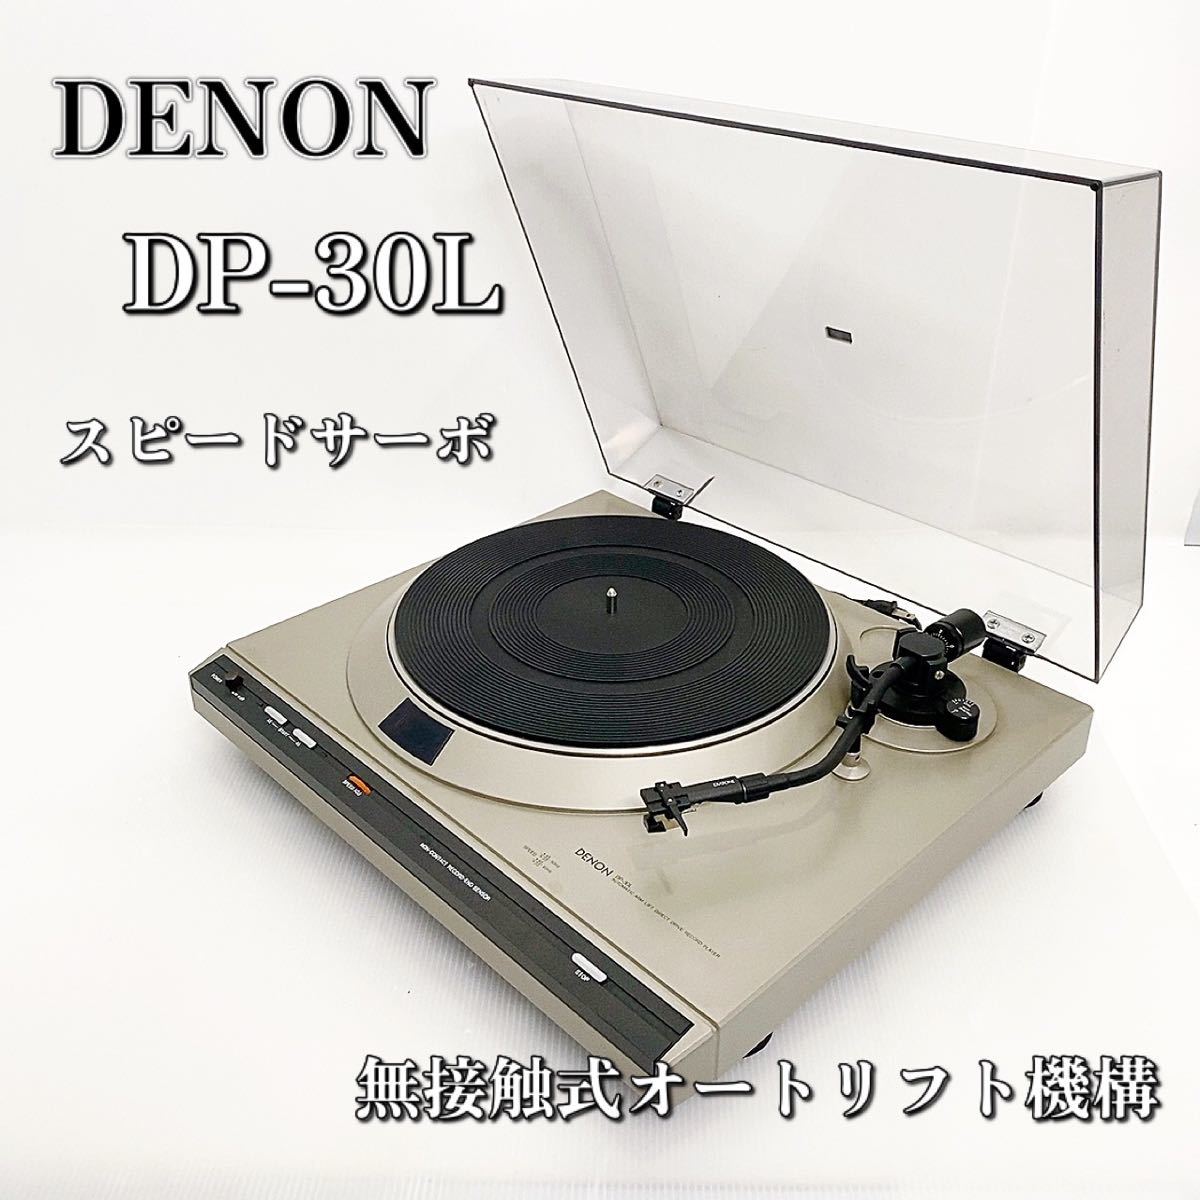 【極上品】DENON DP-30L フルオートレコードプレイヤー デノン